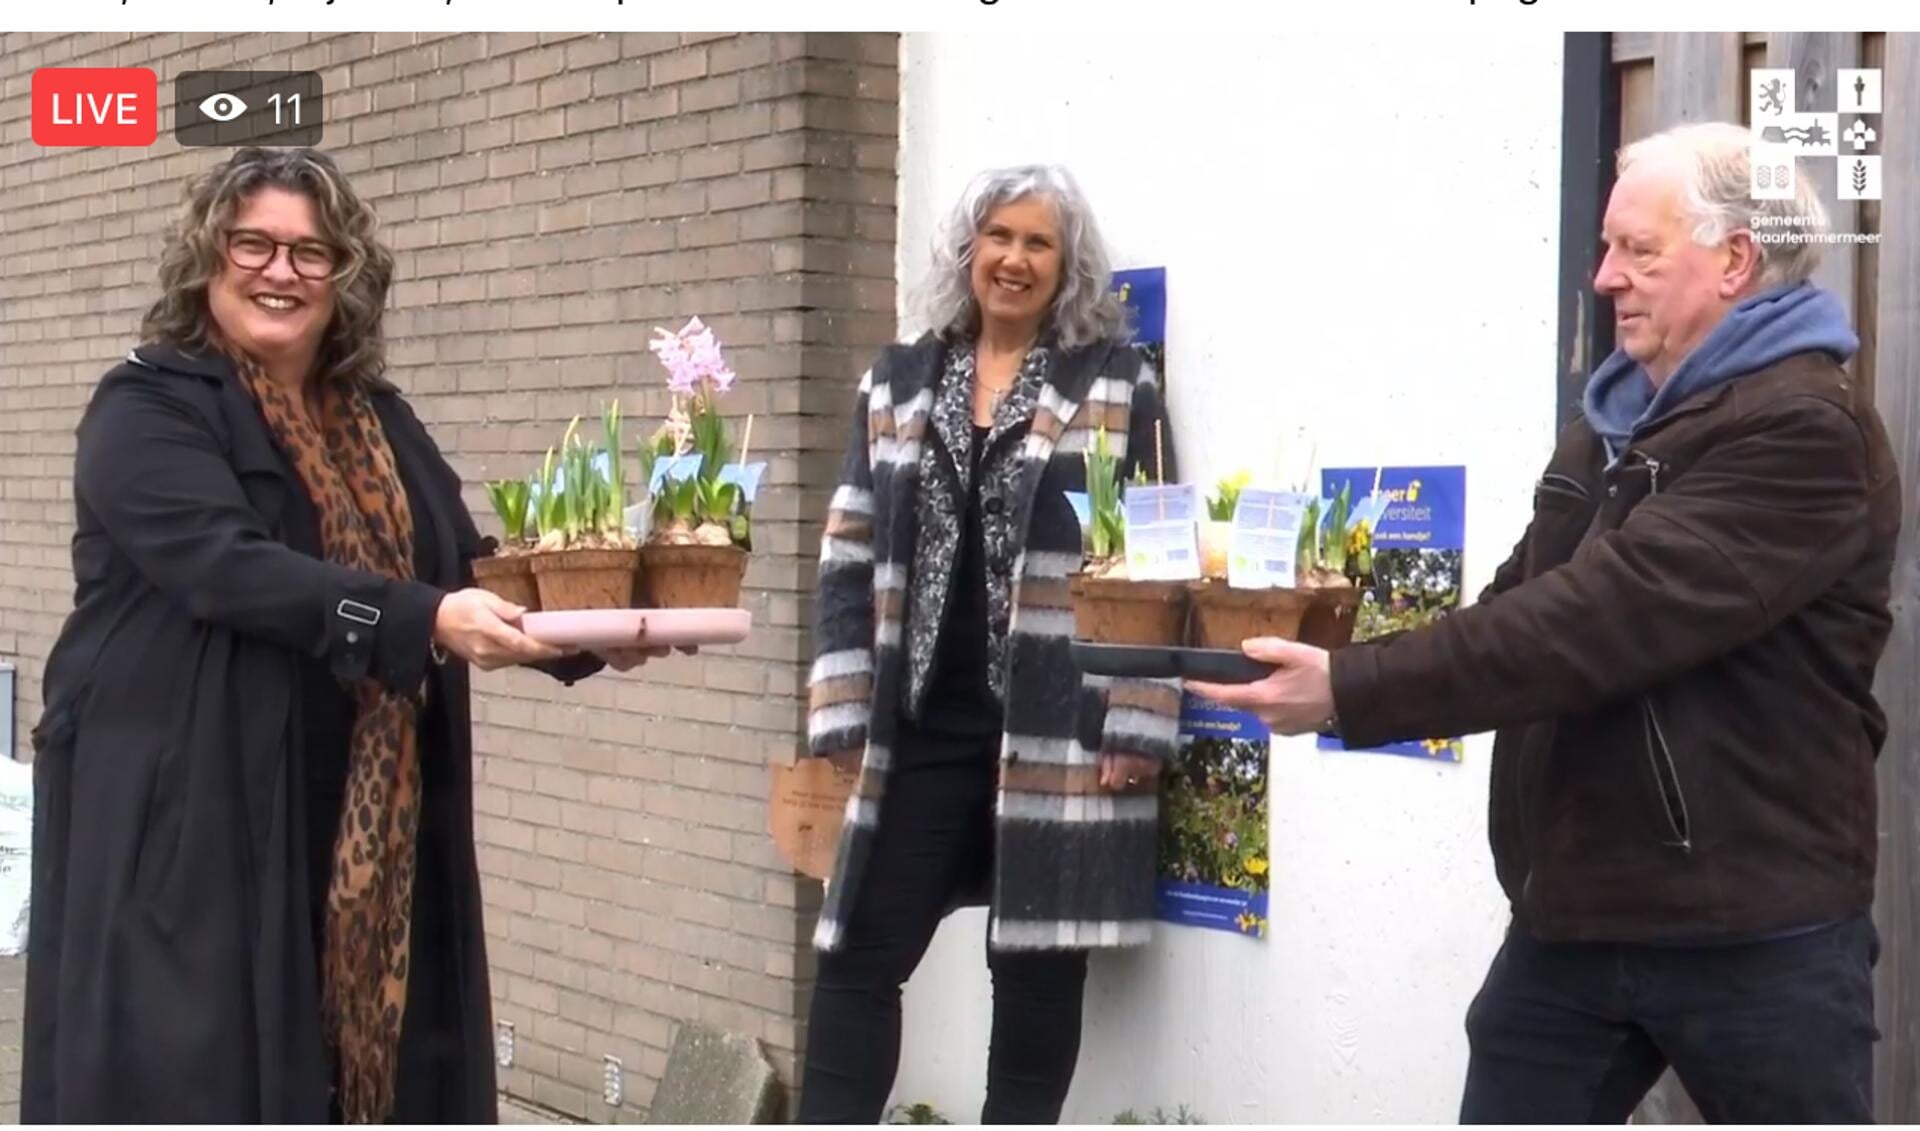 Bewoner van in Overbos Jan Havenaar krijgt van wethouder Steffens enkele plantjes voor zijn geveltuin. NMCX-directeur Arjanne Lagendijk kijkt toe.  